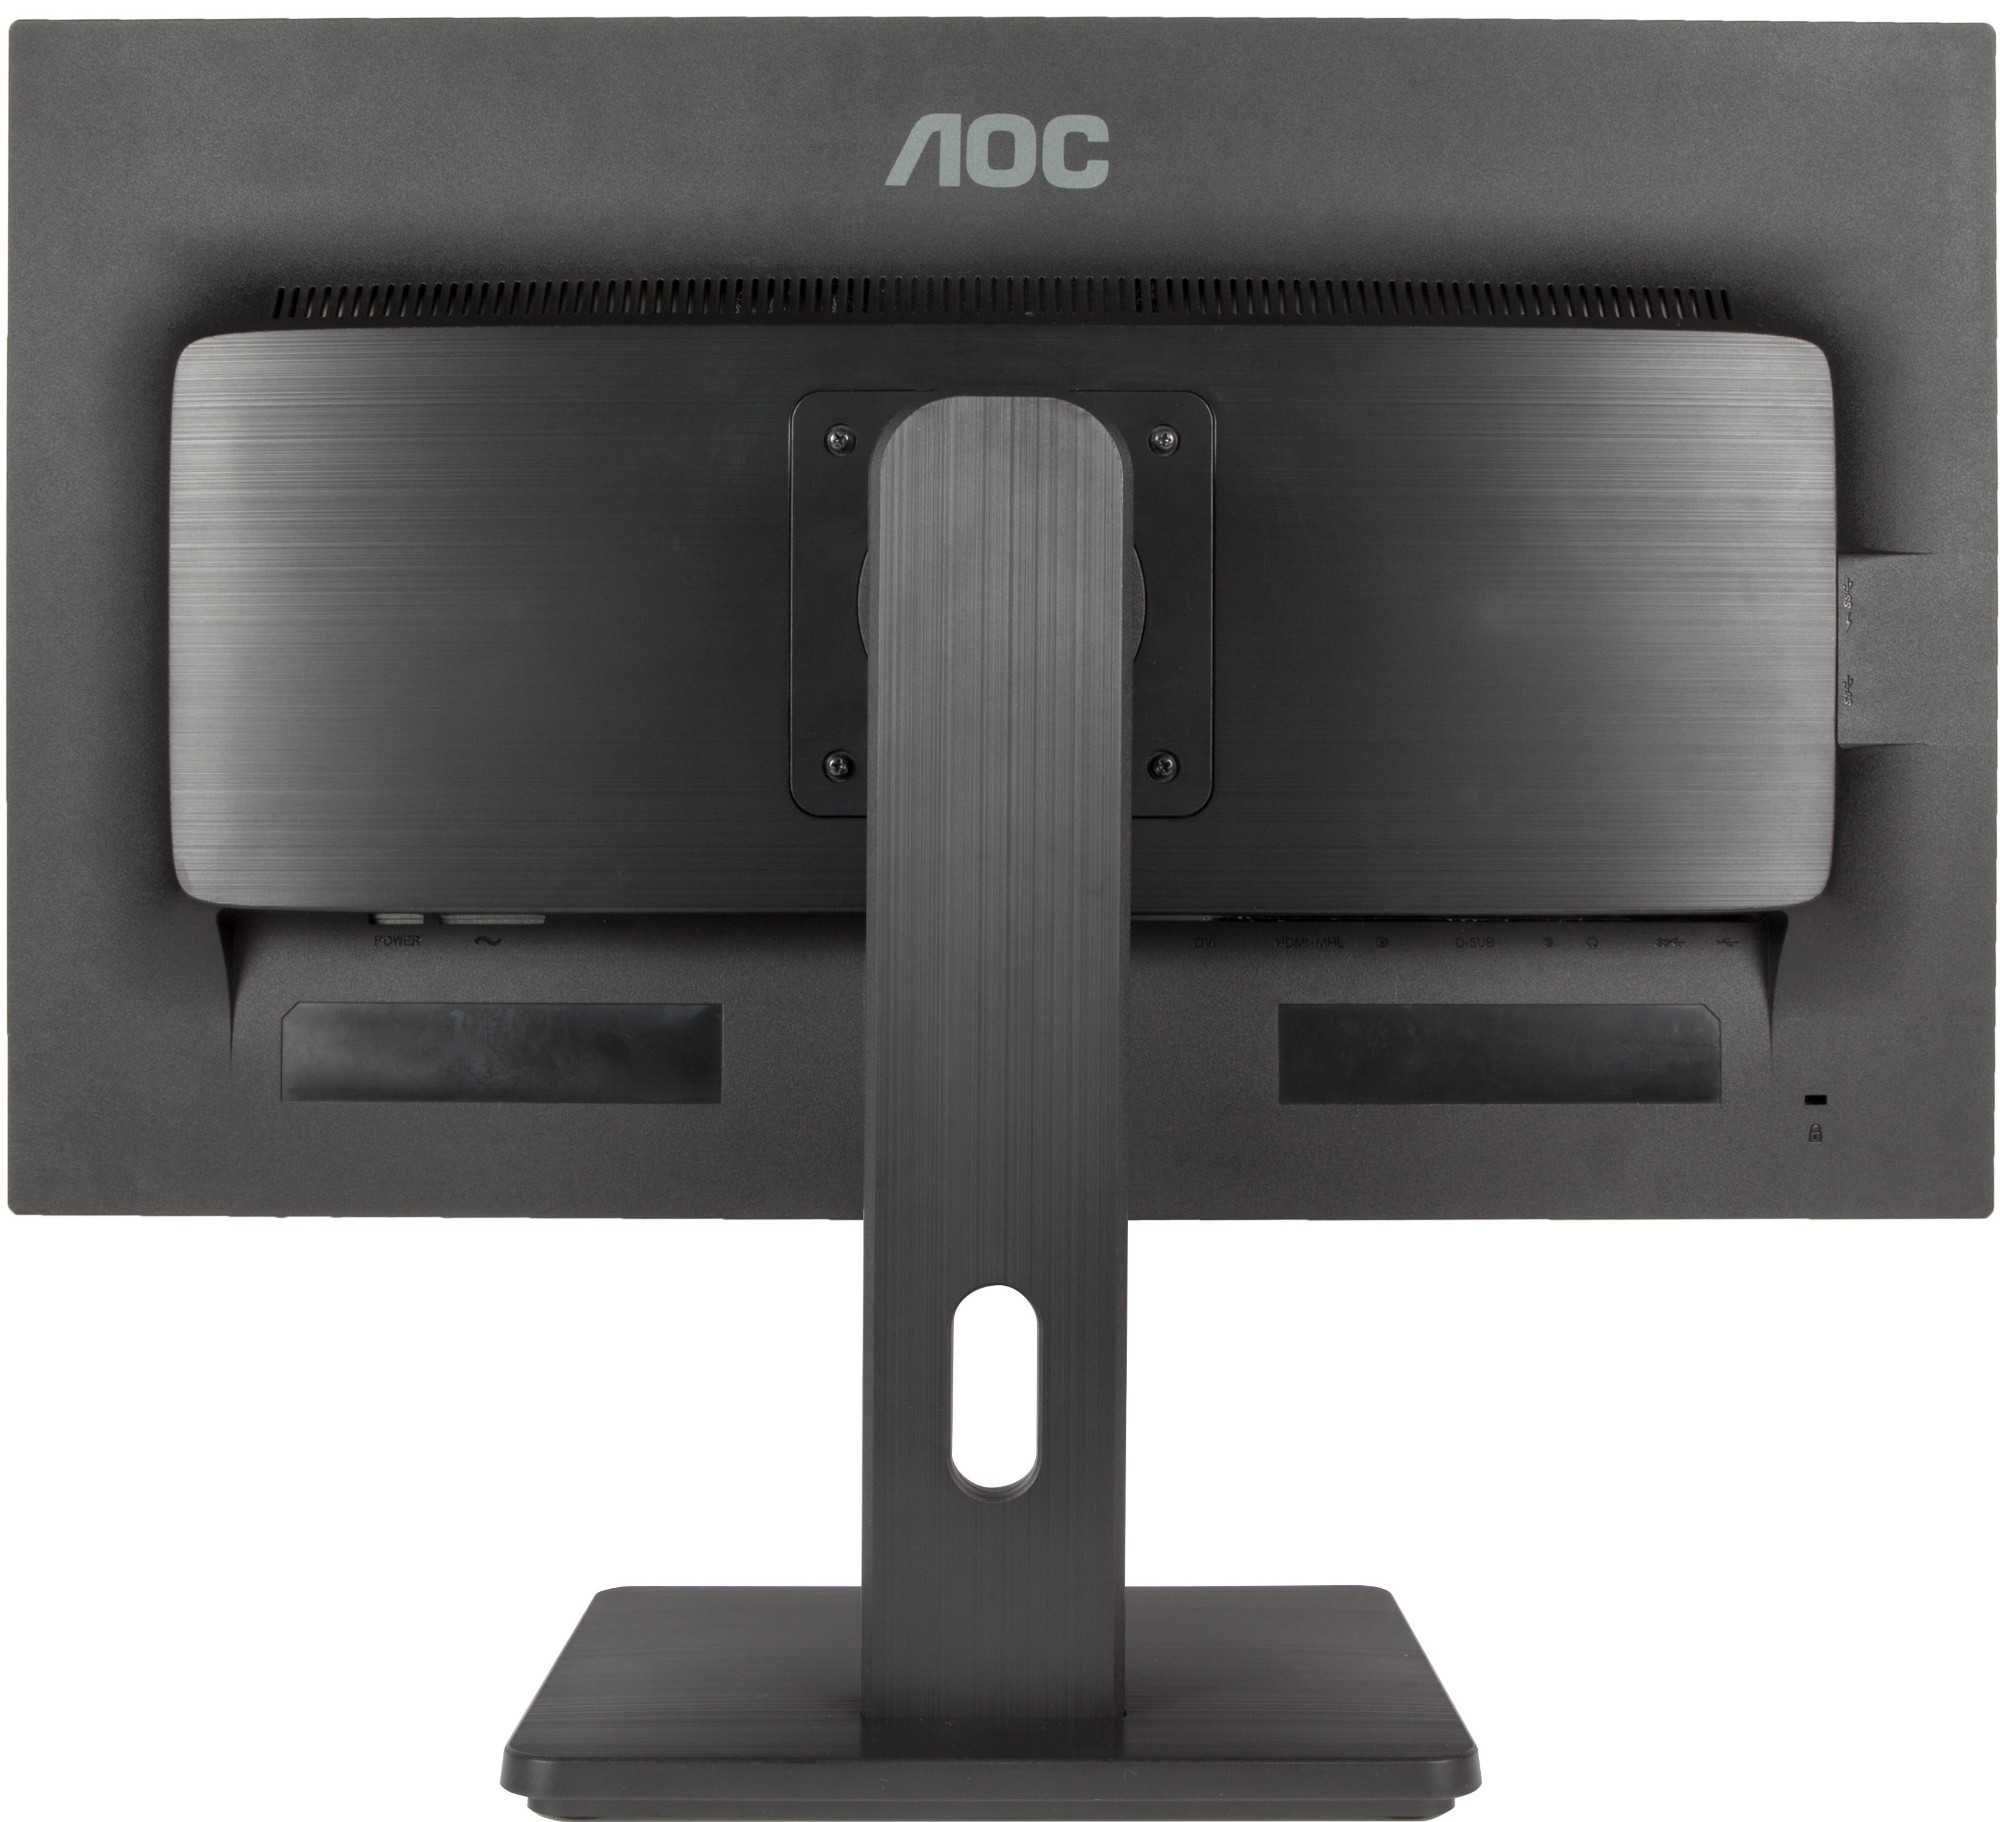 Монитор aoc i2769vm (черный) купить от 11390 руб в ростове-на-дону, сравнить цены, отзывы, видео обзоры и характеристики